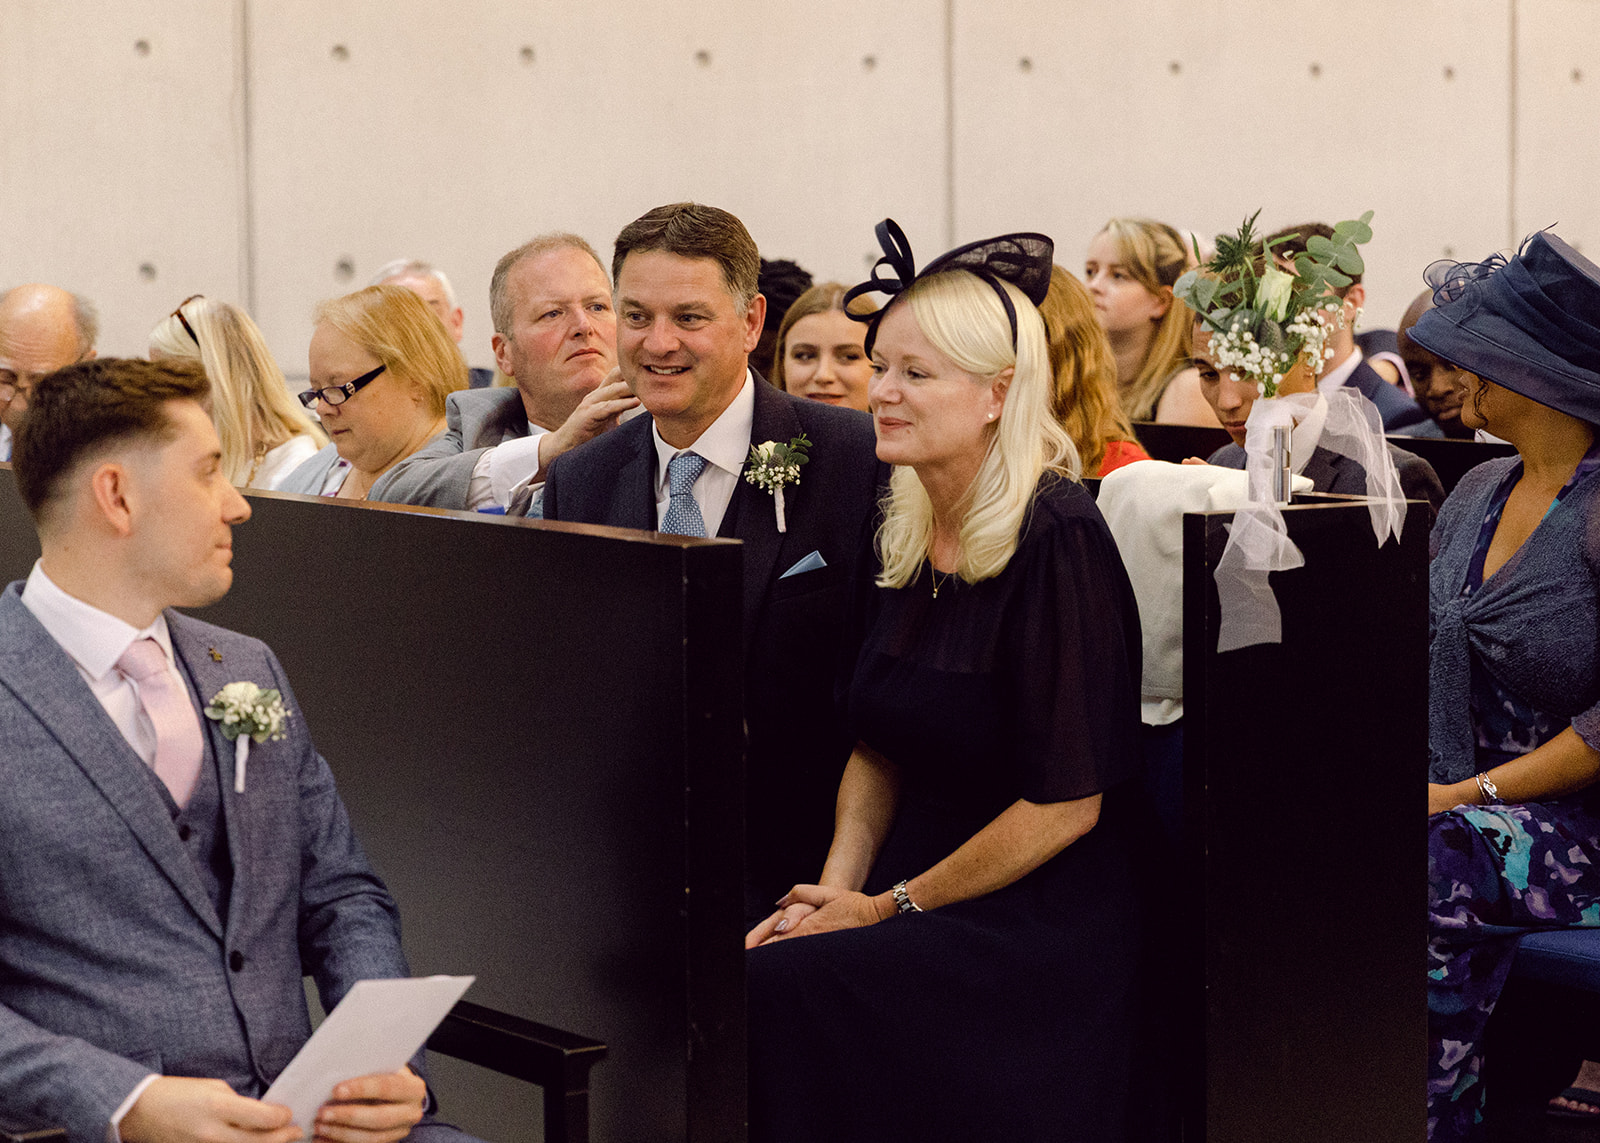 dreamy wedding in aarhus, couple get married in Enghøj Sognegård church, randers, aarhus.